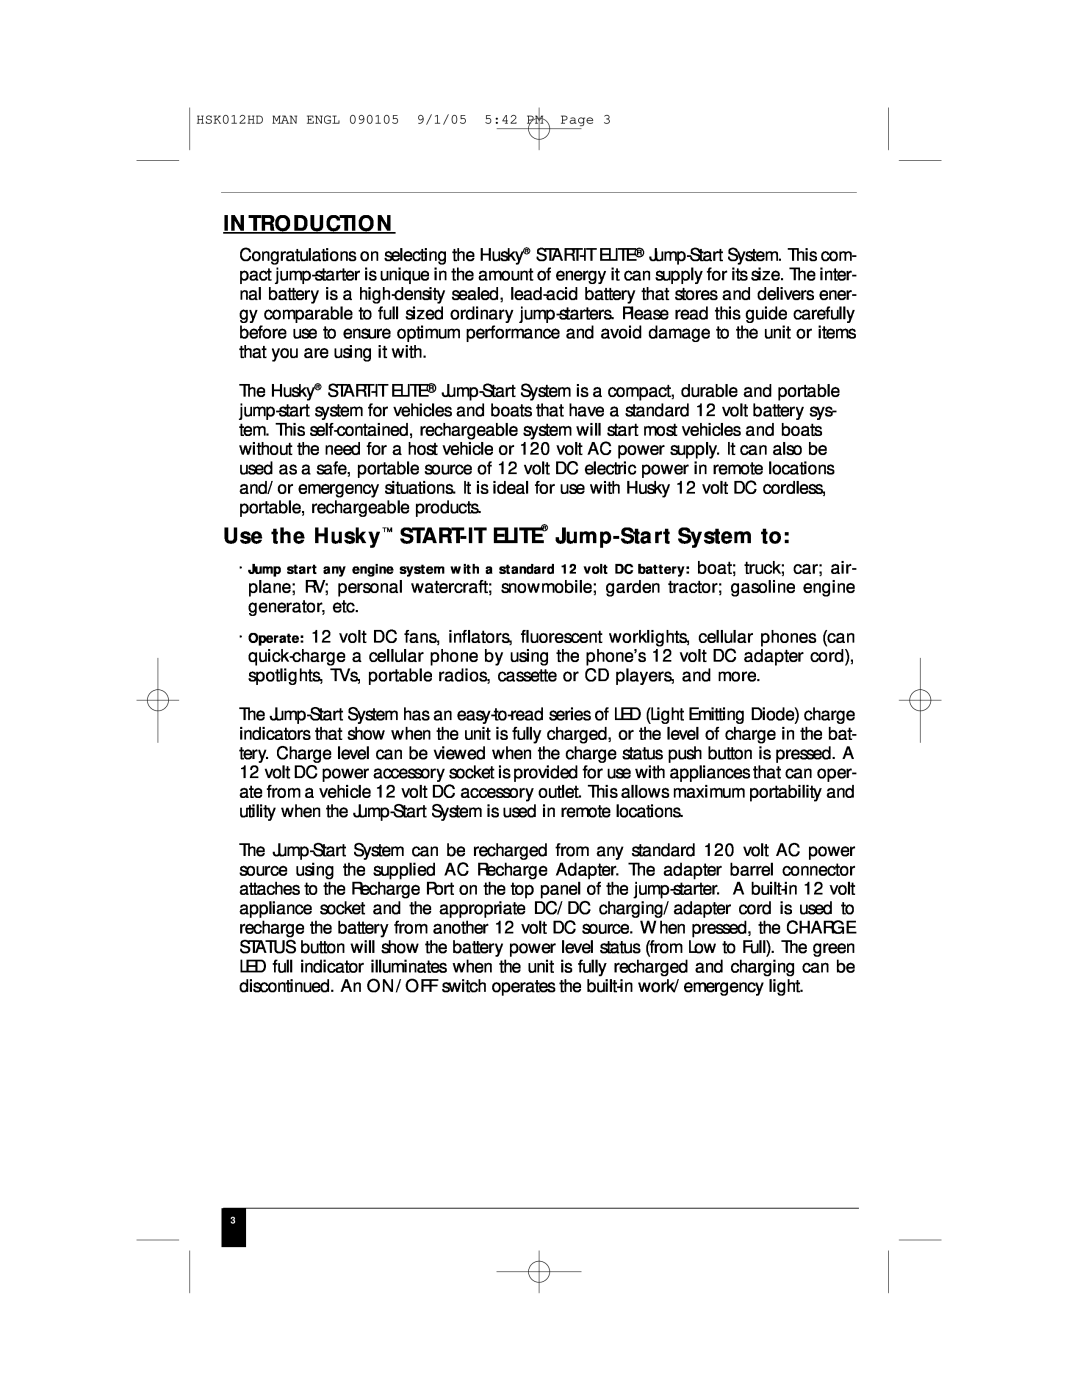 Husky HSK012HD manual Introduction, Use the Husky START-IT ELITE Jump-Start System to 